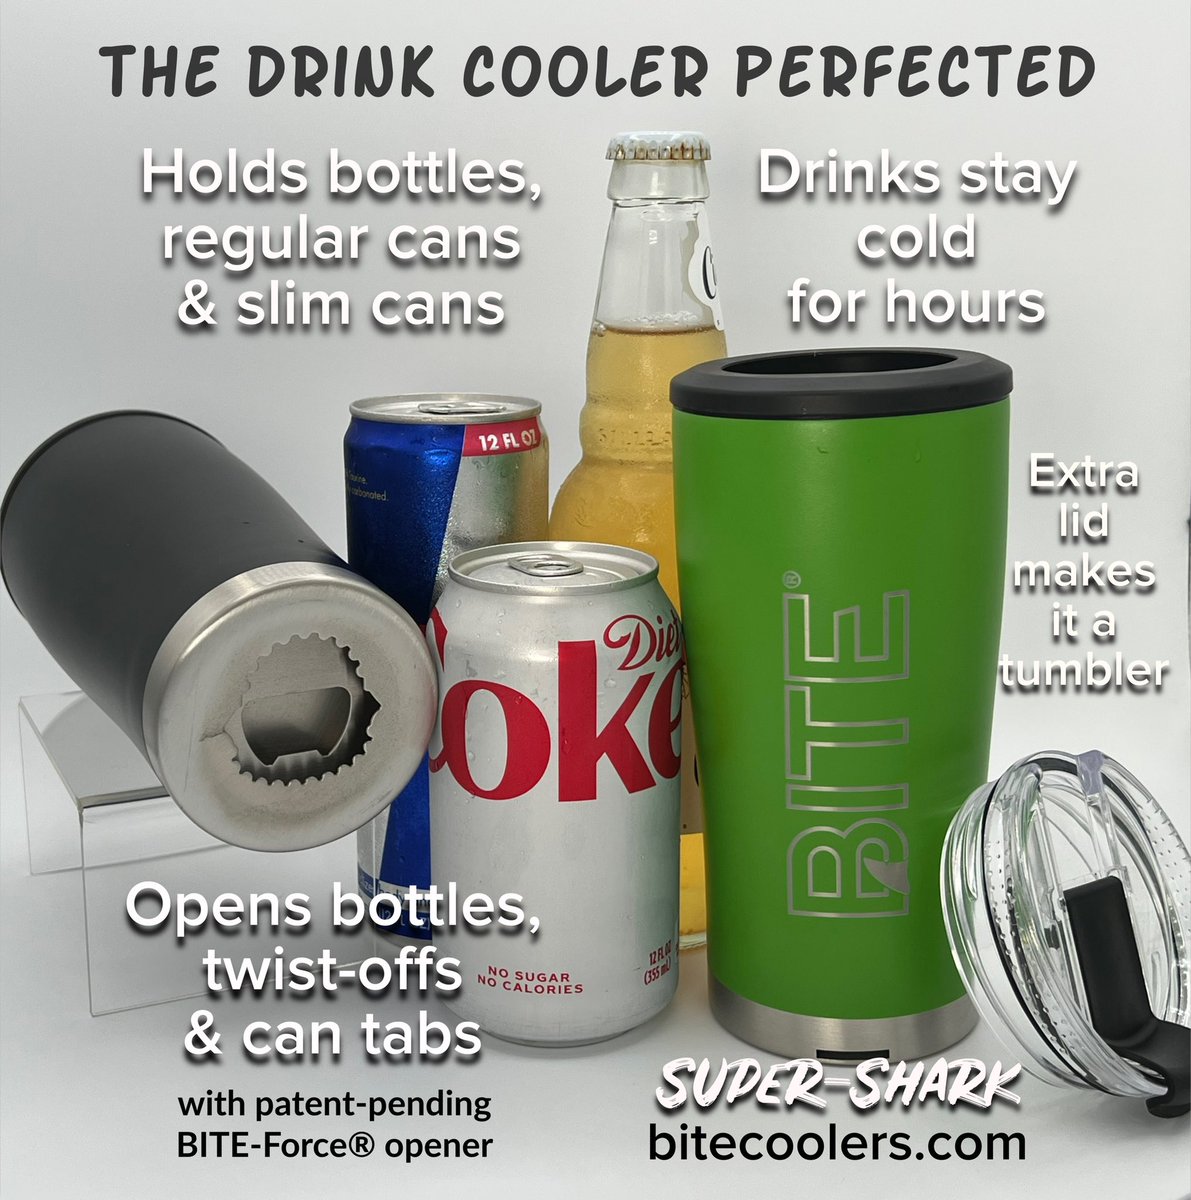 You need it. ❤️🦈 #supershark #bite #drinkcooler bitecoolers.com